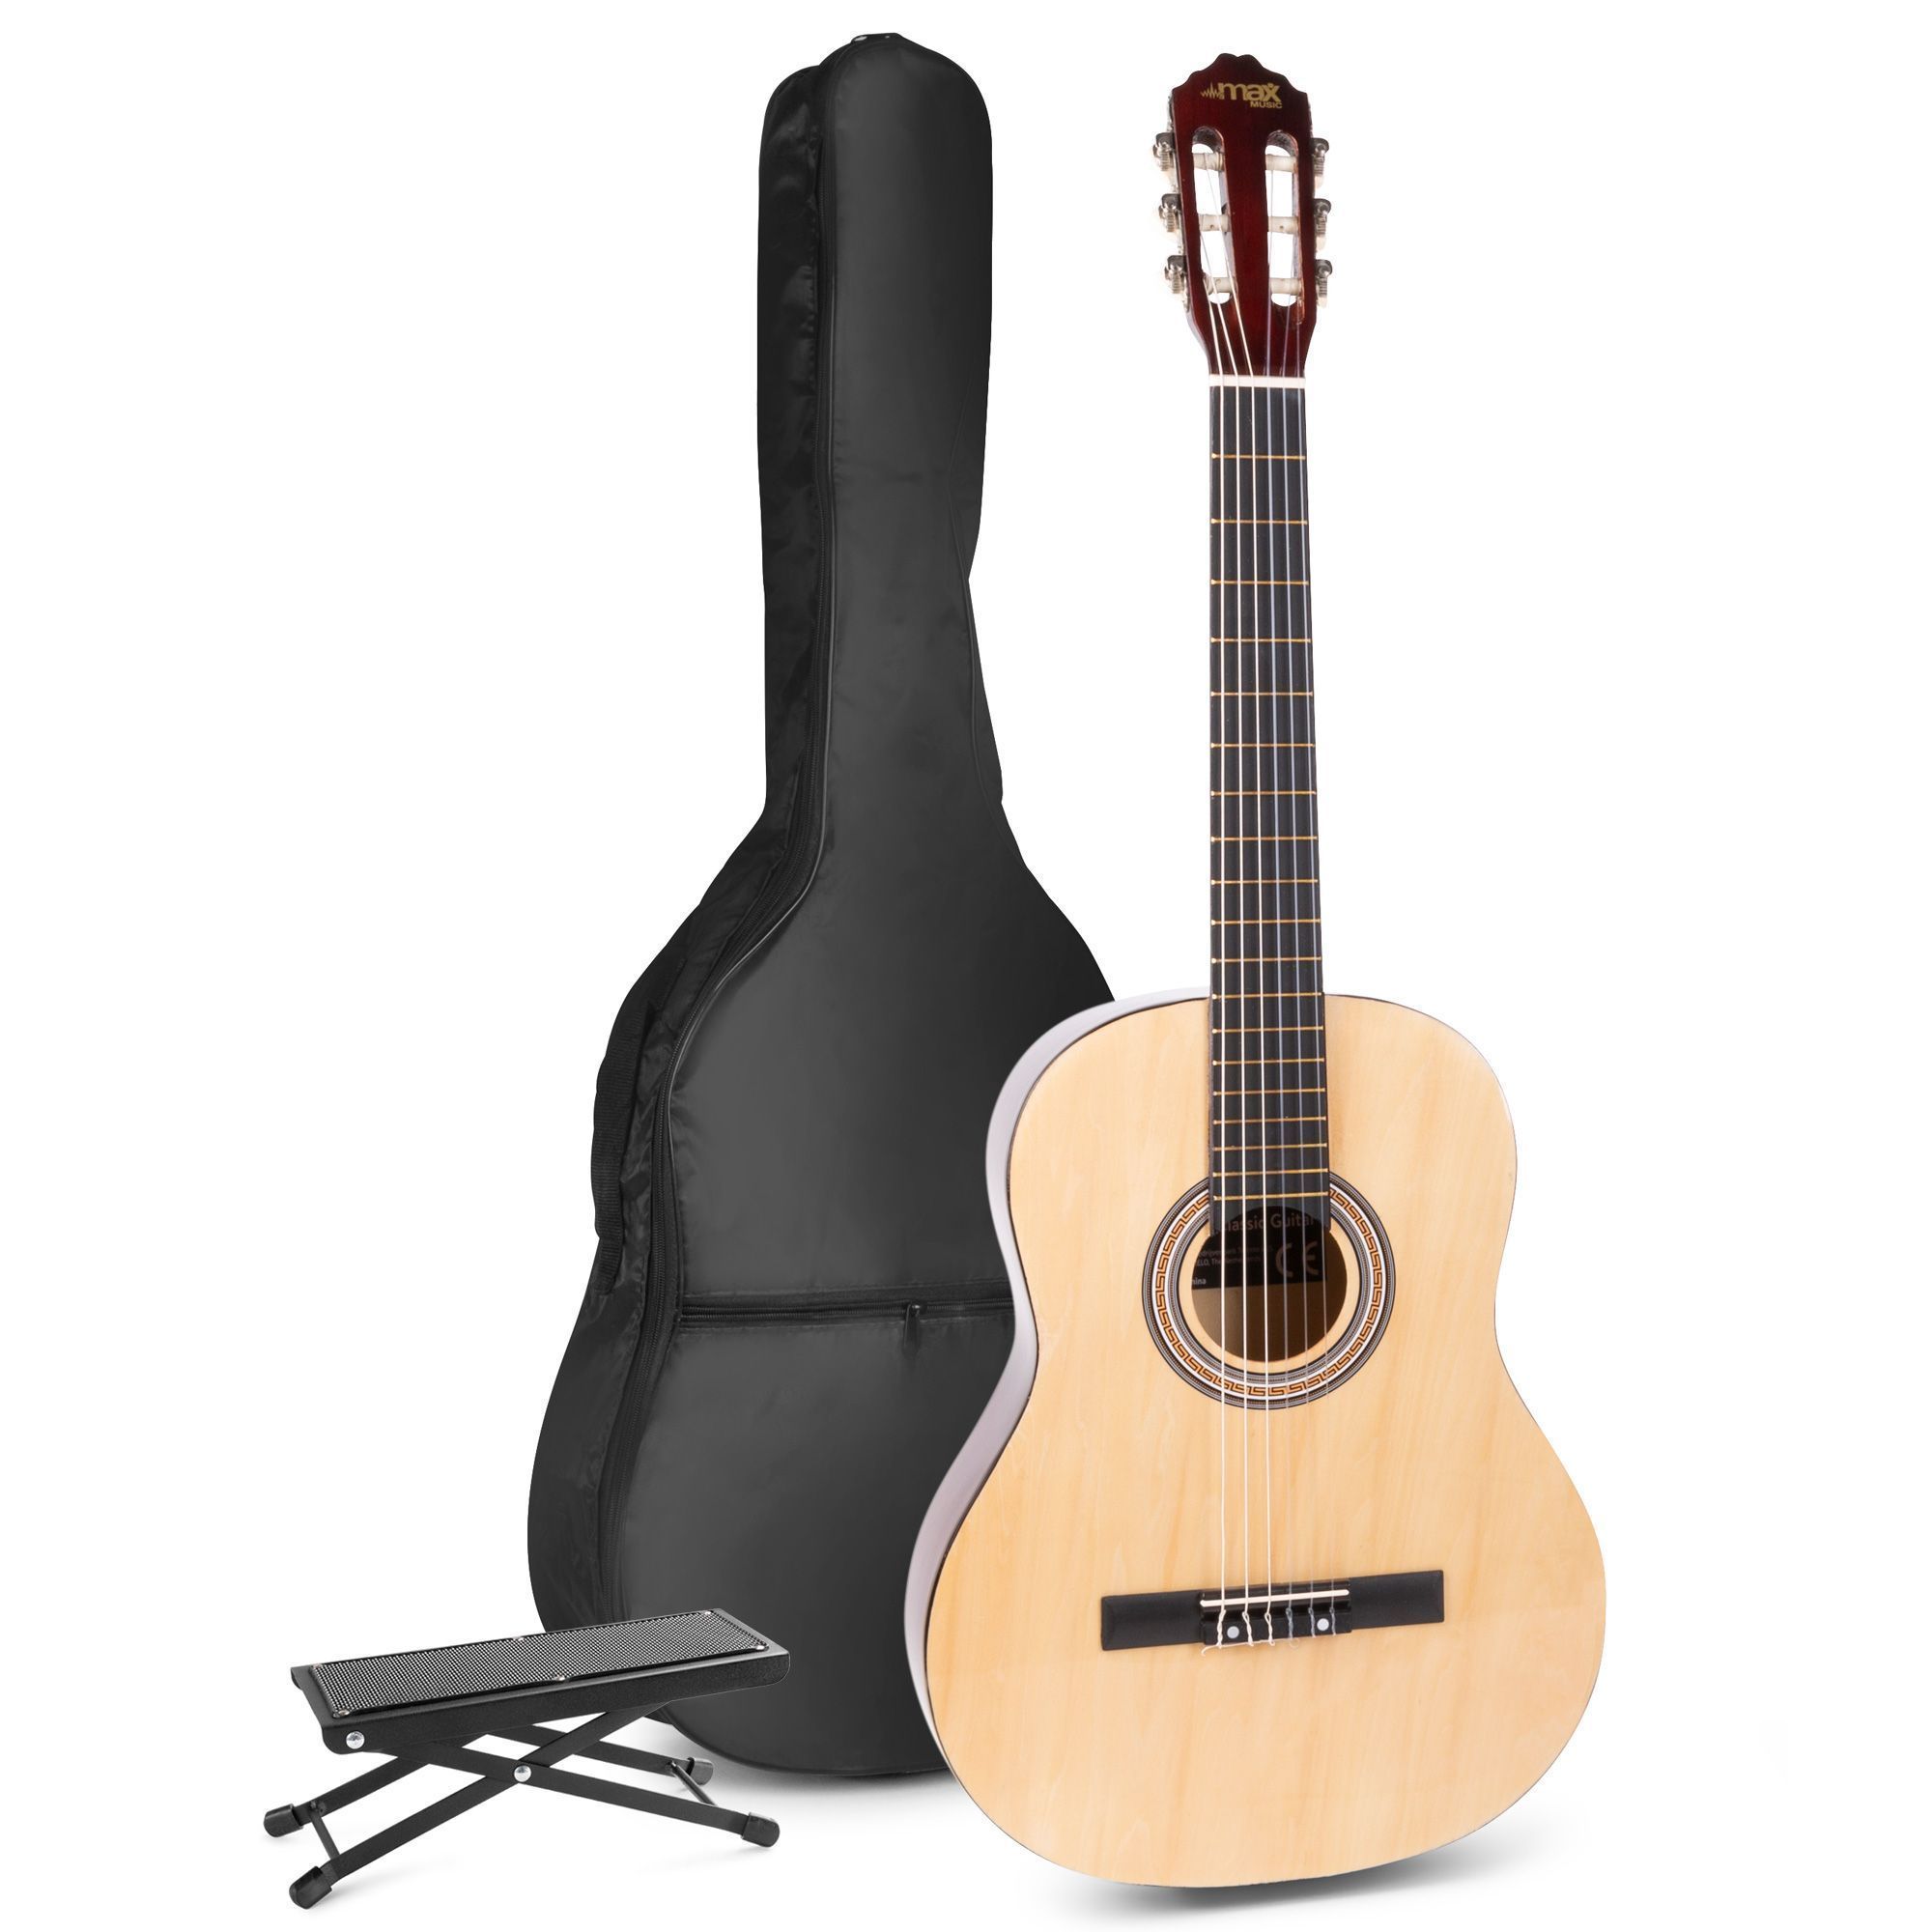 Verzorger scheren zien MAX SoloArt klassieke akoestische gitaar met voetsteun - Hout kopen?